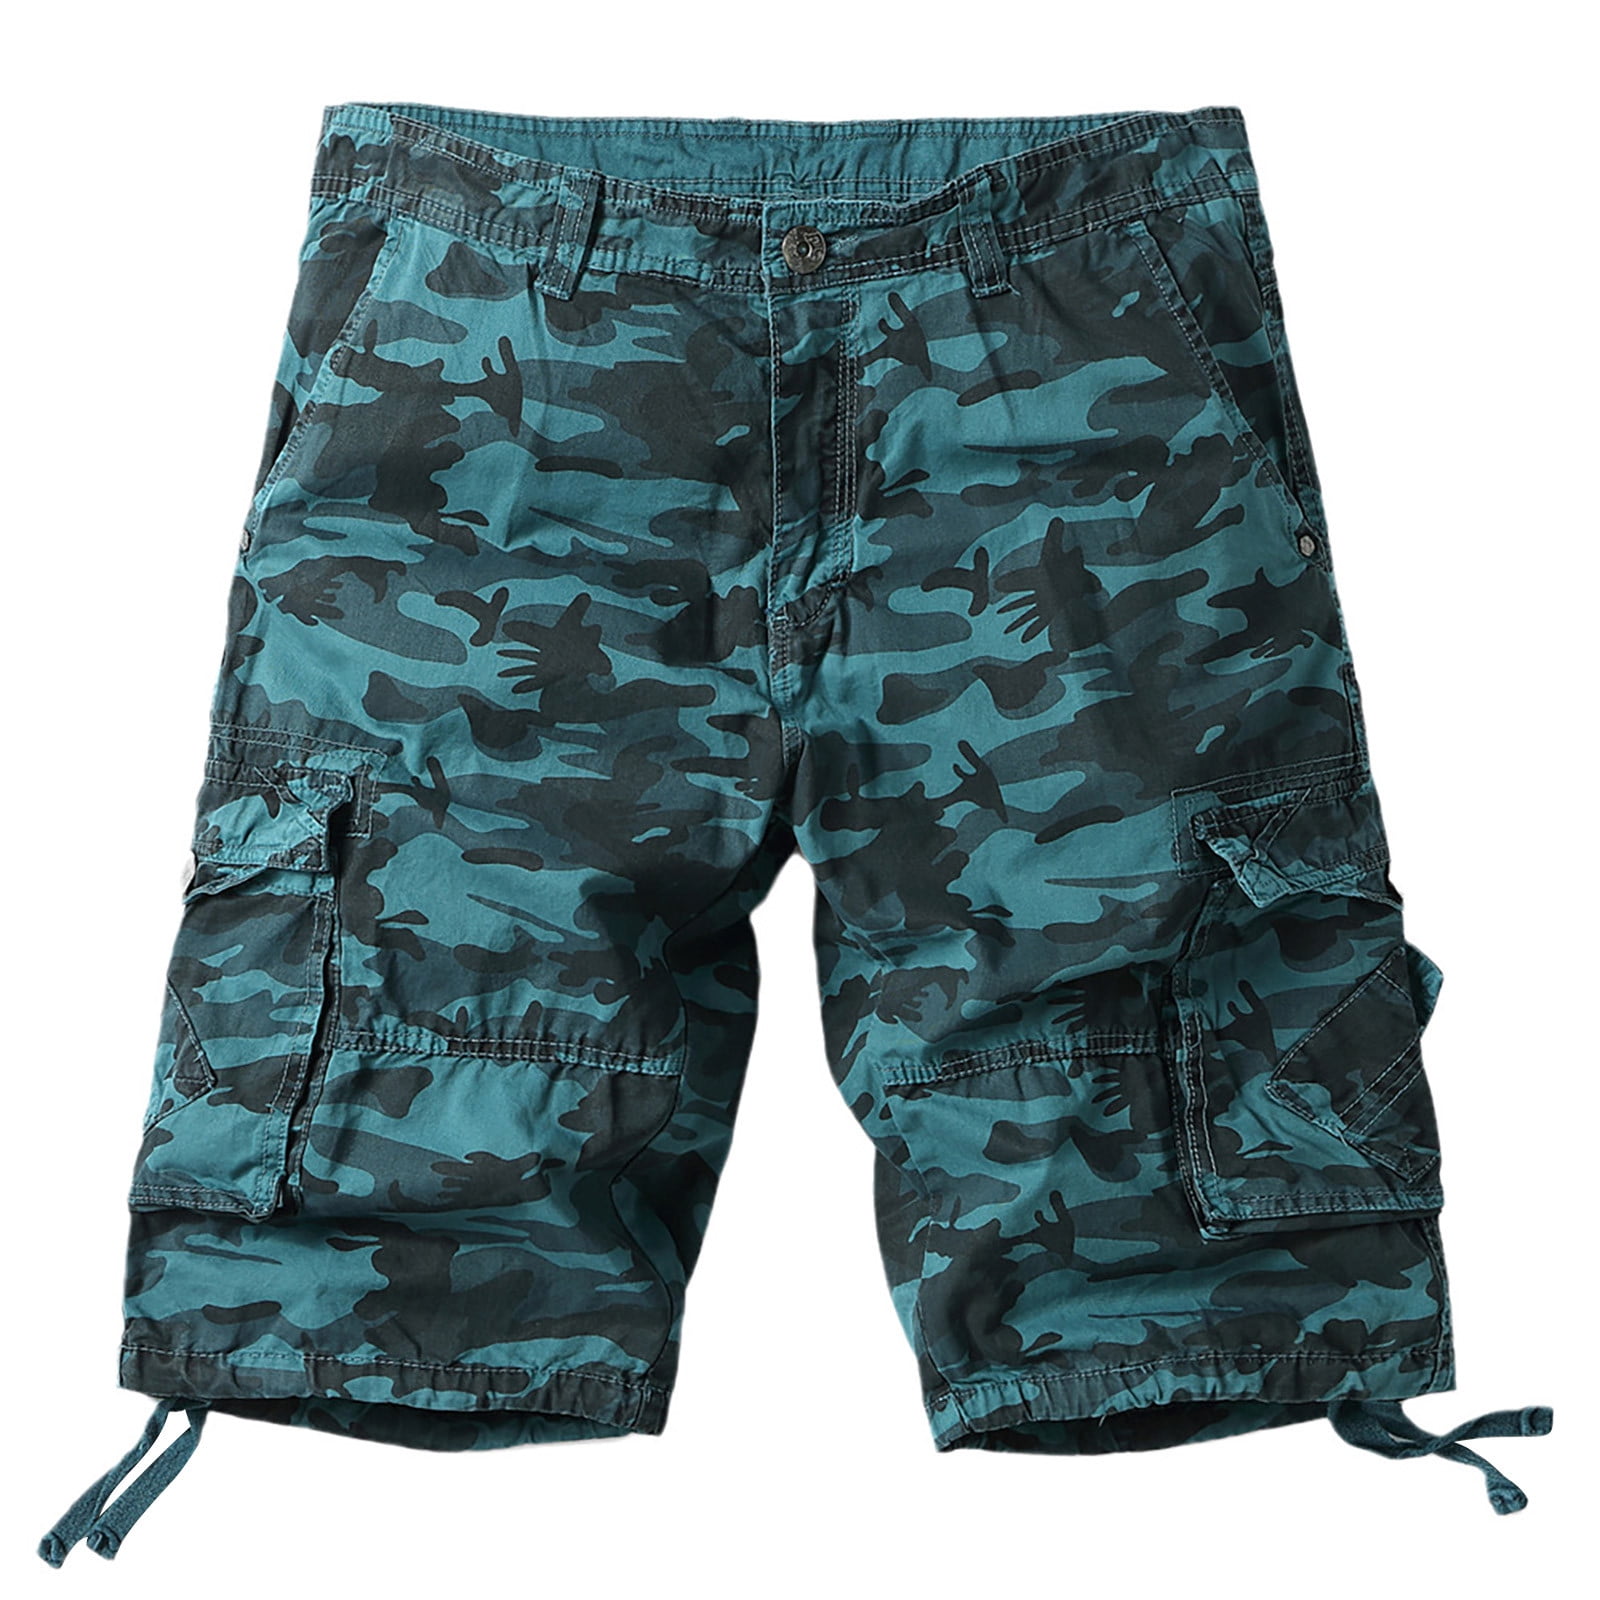 YYDGH Men's Twill Camo Cargo Shorts Cotton Casual Multi Pocket Outdoor ...